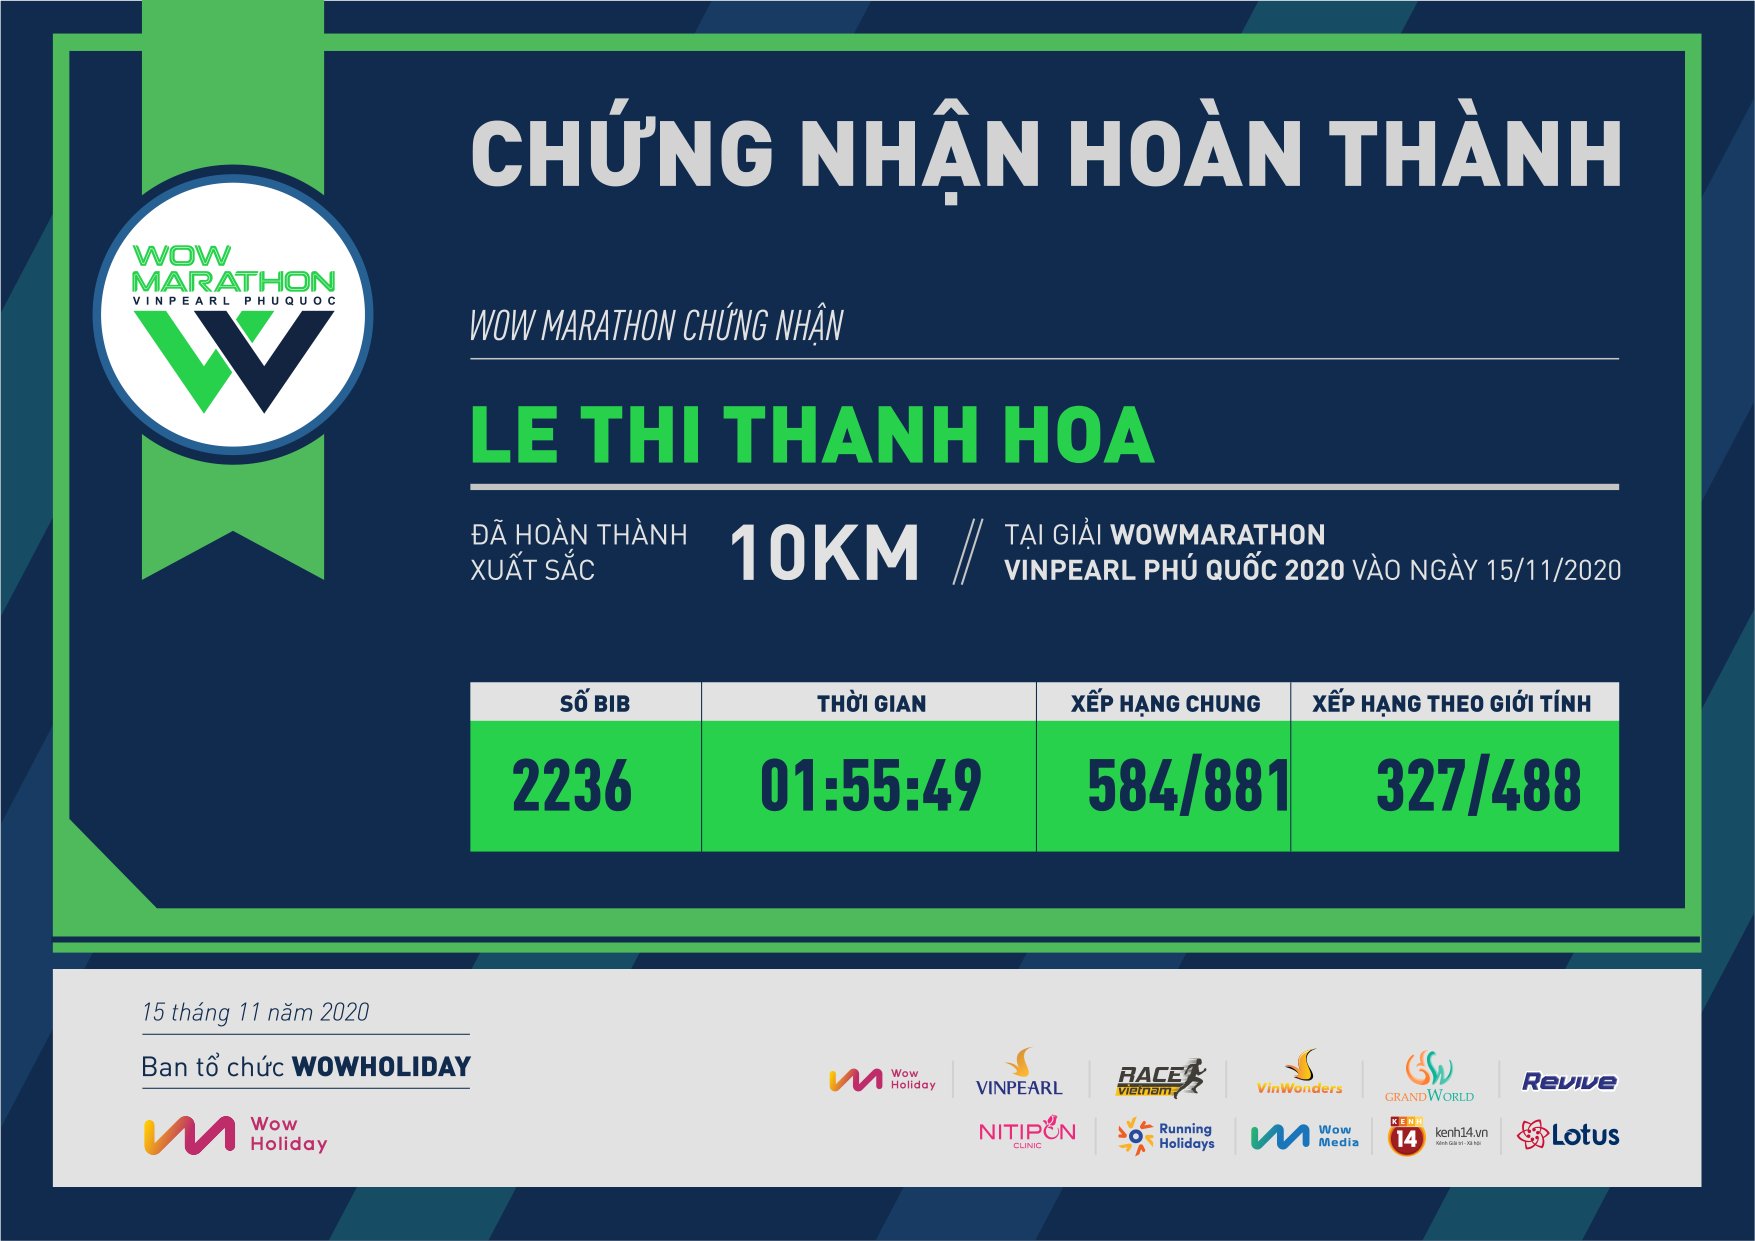 2236 - Le Thi Thanh Hoa